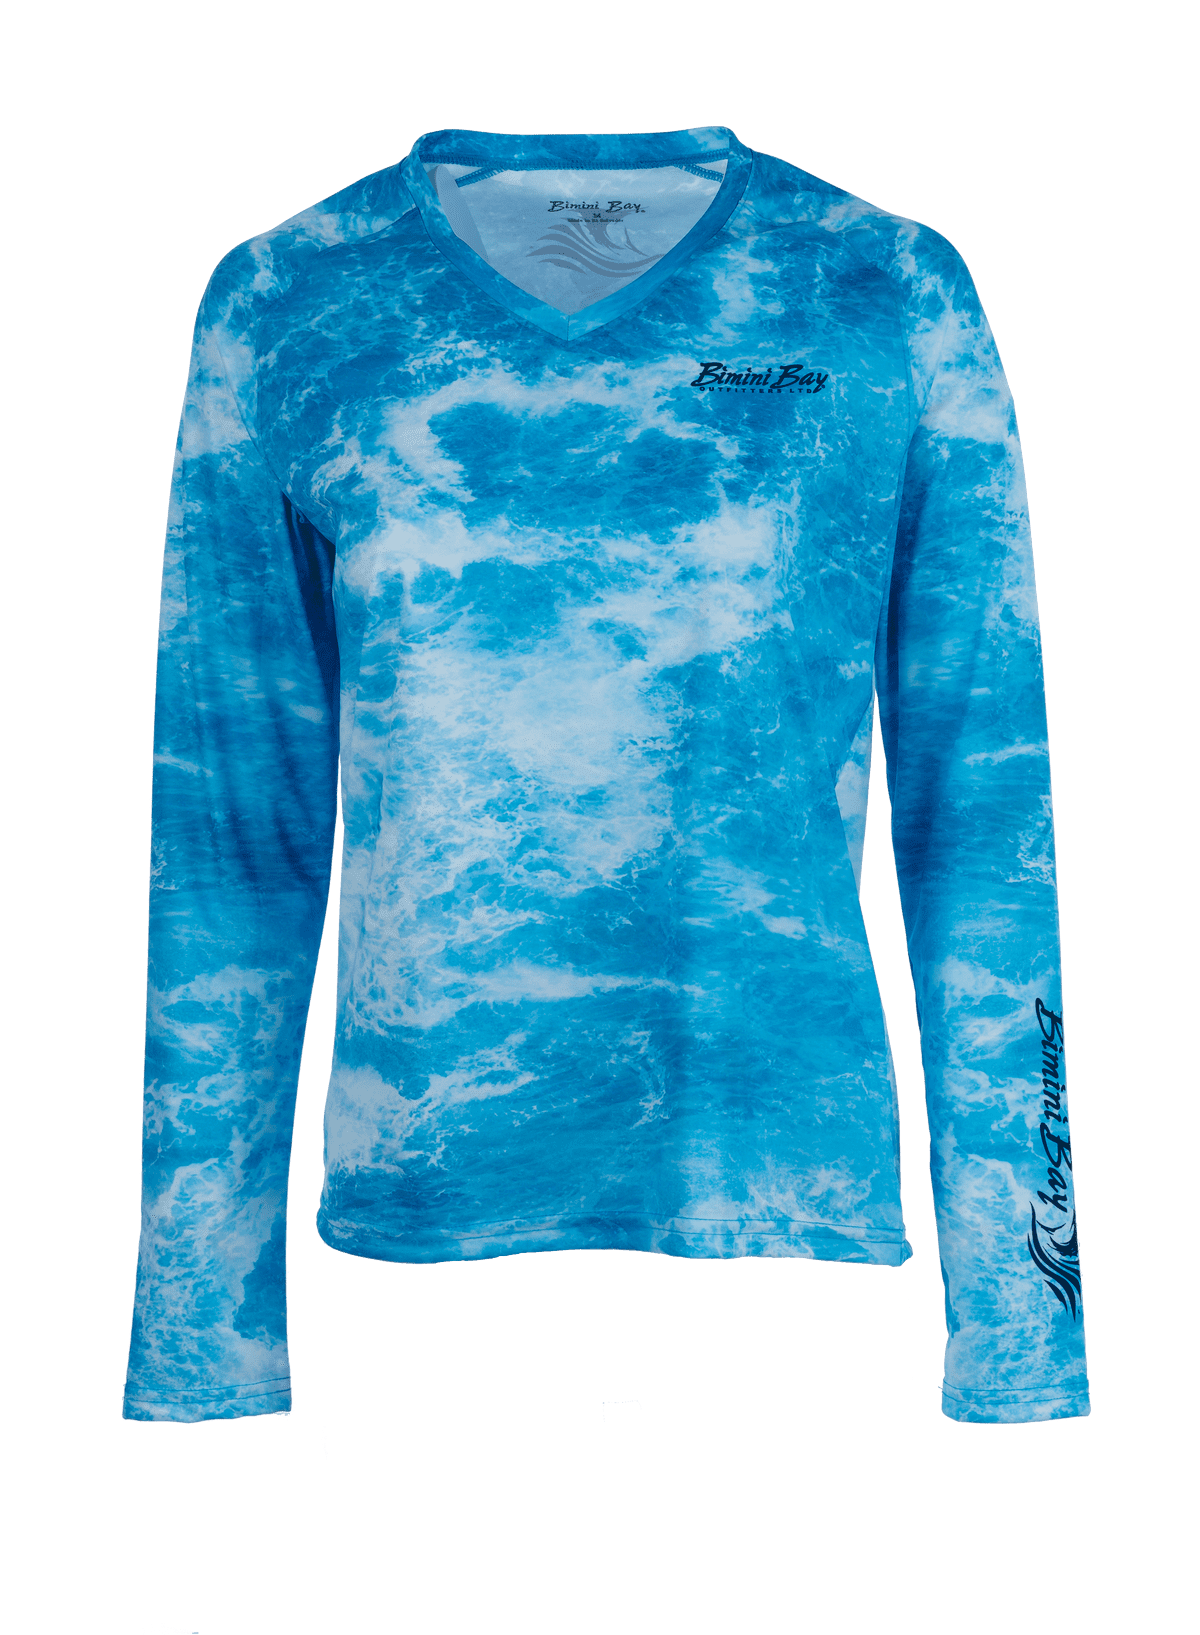 Bimini Bay Outfitters Undertow Camo Women's Long Sleeve Shirt - Walmart.com